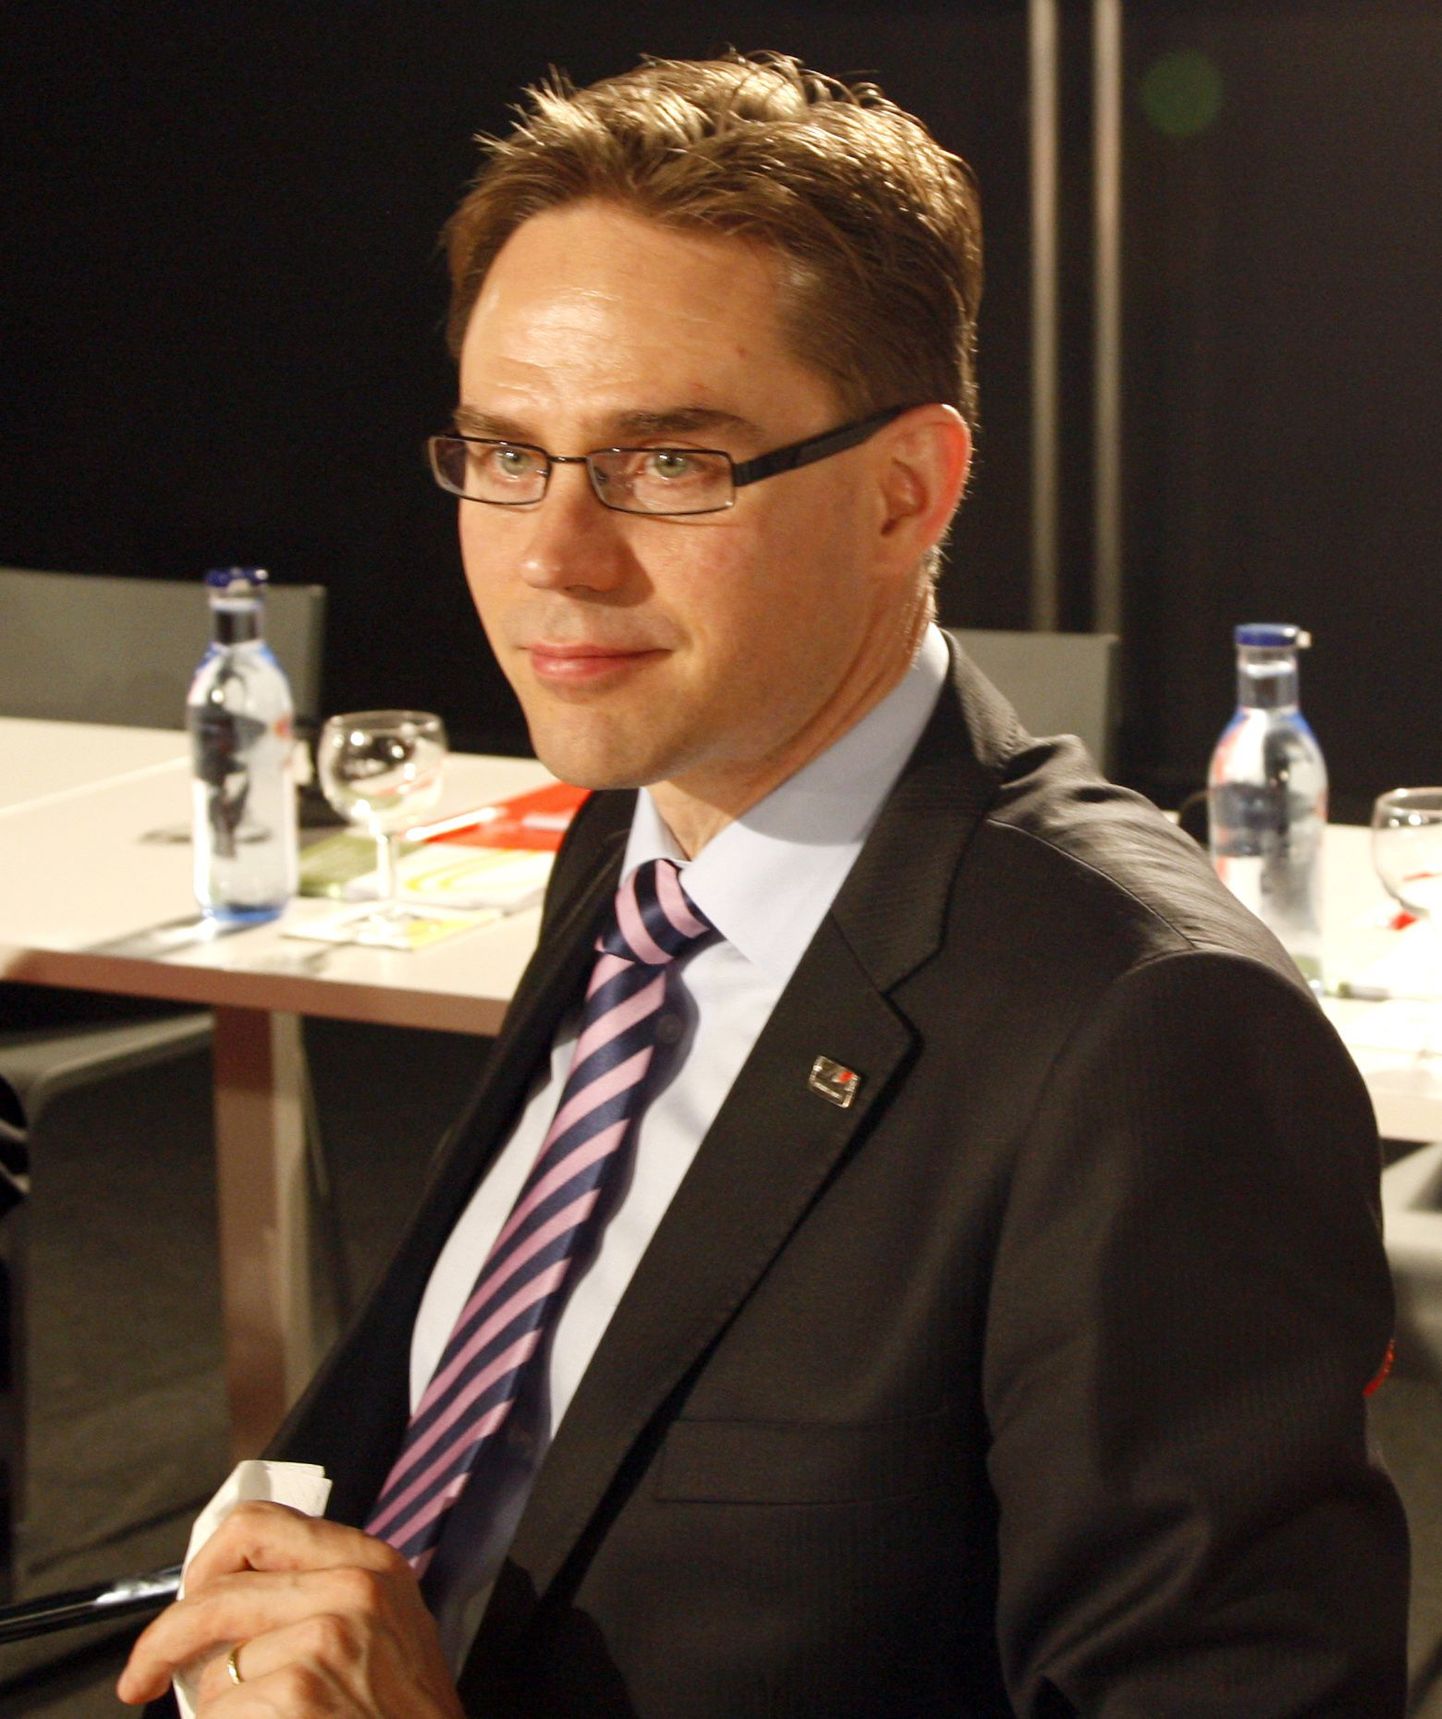 Soome rahandusminister Jyrki Katainen